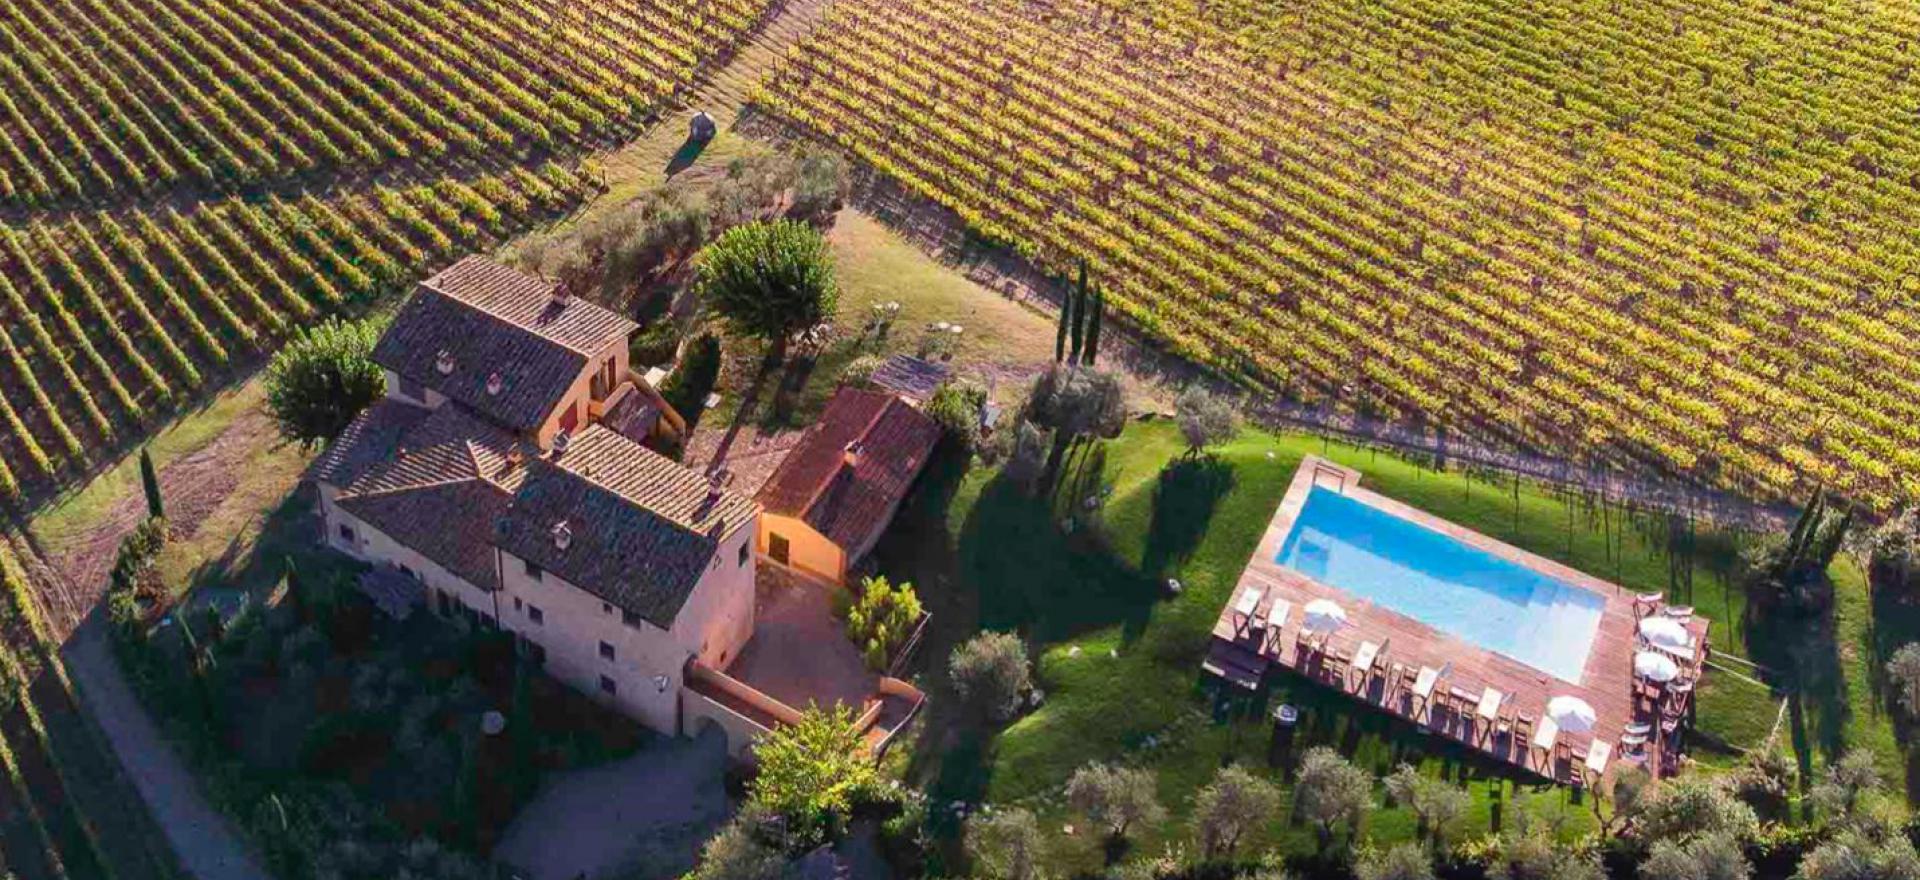 Gastvrije agriturismo en wijnboerderij bij Florence